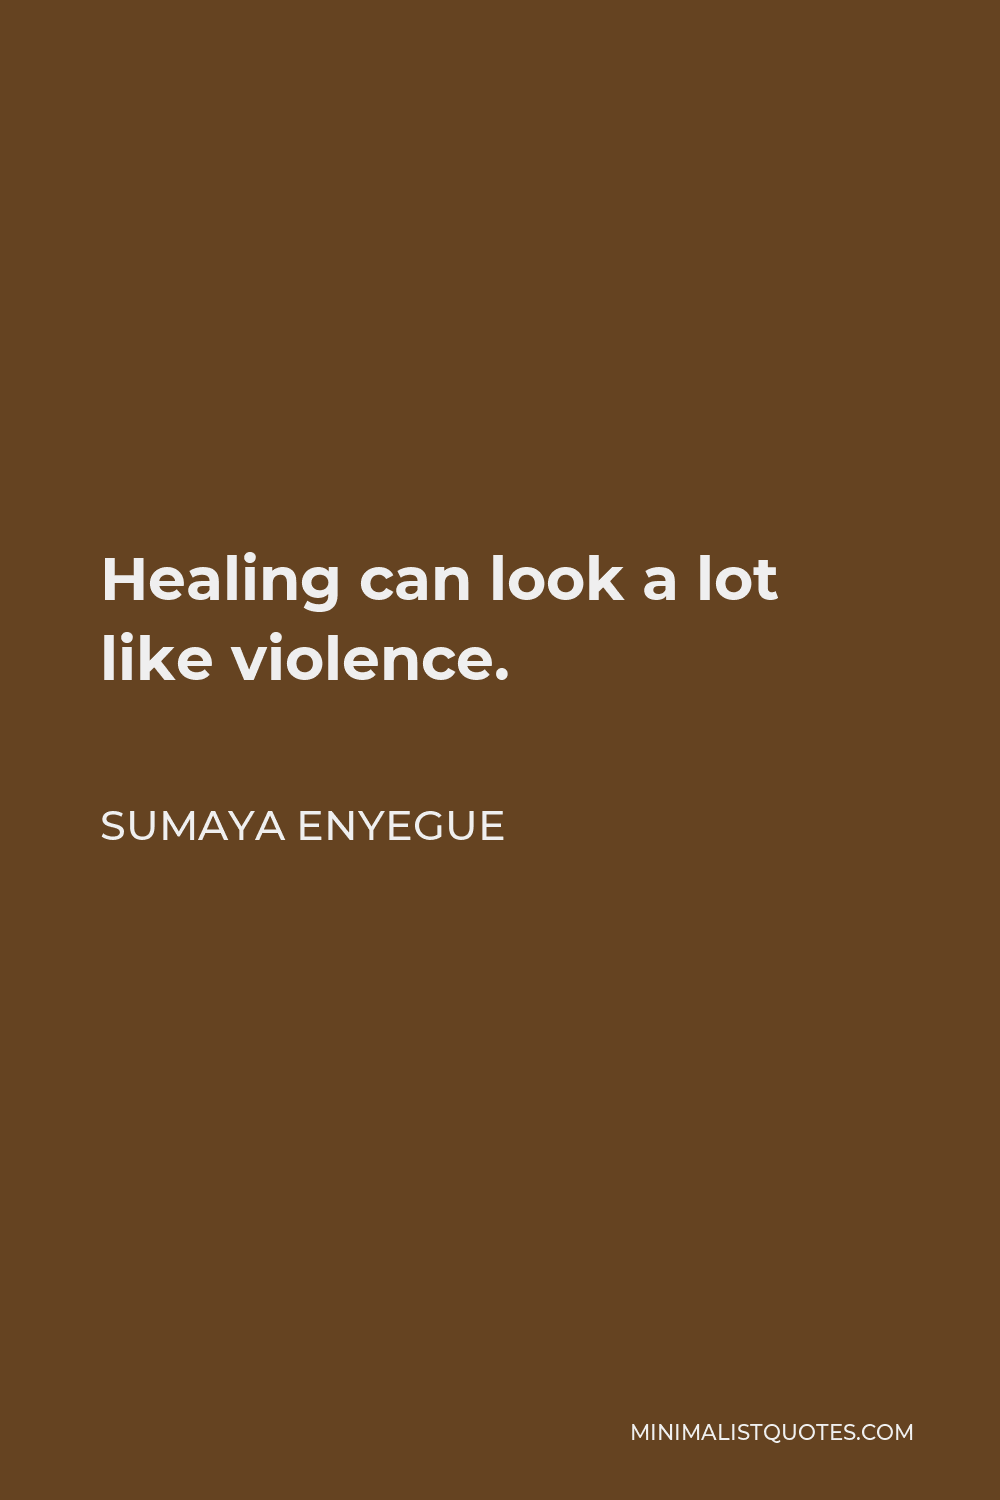 Sumaya Enyegue Quote - Healing can look a lot like violence.